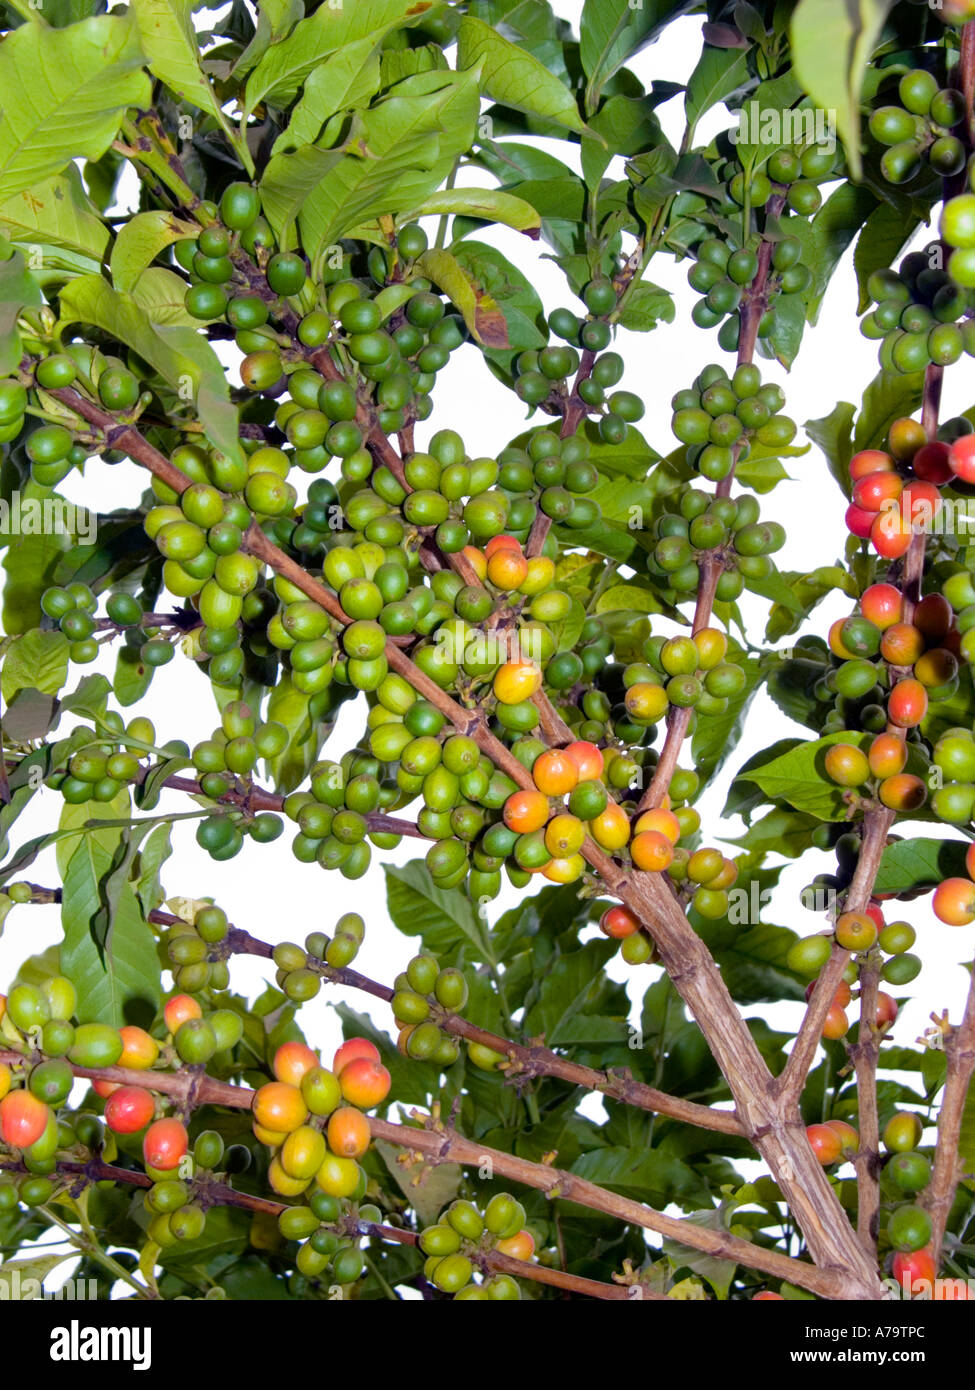 Ciliegie di caffè giallo verde rosso Coffea arabica Kenya Africa orientale fagioli sul ramo cespuglio arbusto, i caffè più belli del mondo Foto Stock